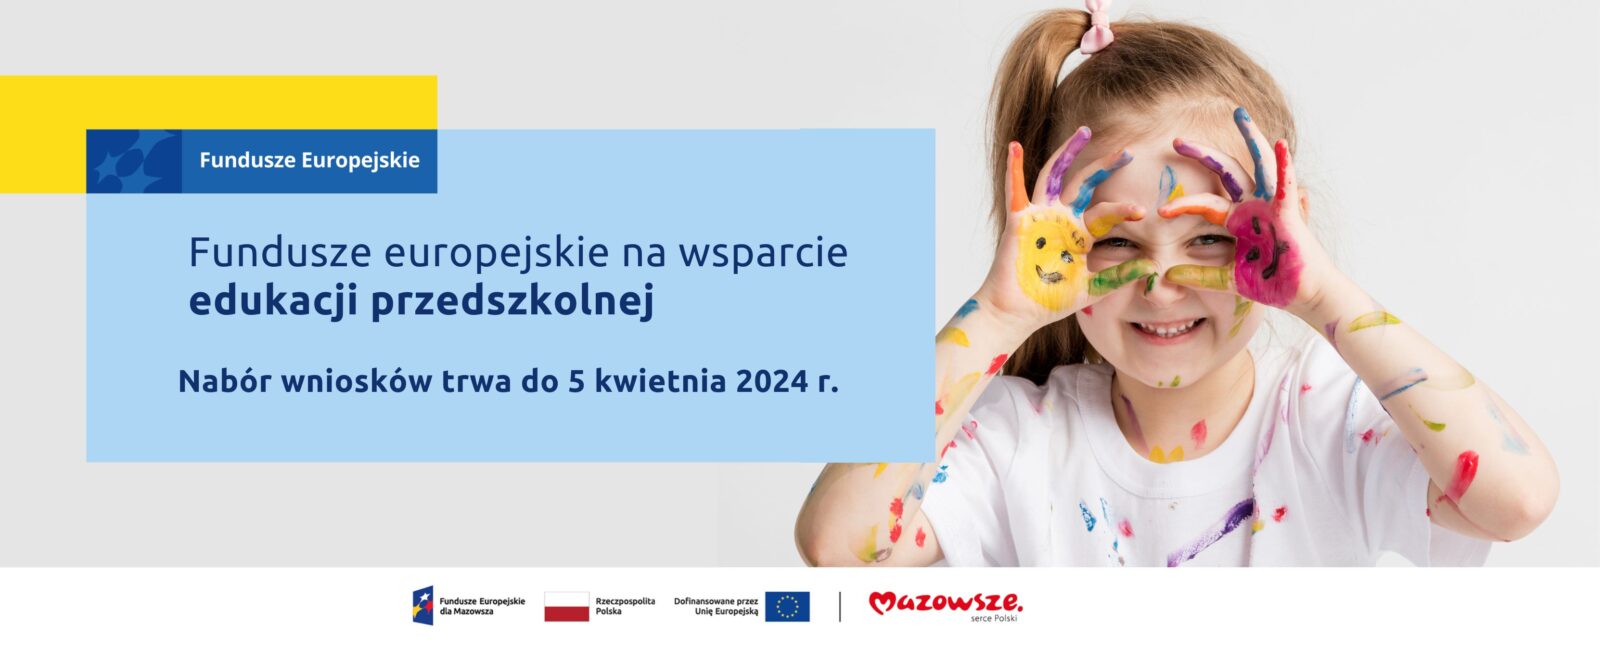 Na grafice znajduje się hasło: Fundusze europejskie na wsparcie edukacji przedszkolnej. Nabór wniosków trwa do 5 kwietnia 2024 r. Obok zdjęcie przedstawiające dziewczynkę z dłońmi pomalowanymi farbami w kolorowe, uśmiechnięte buzie.